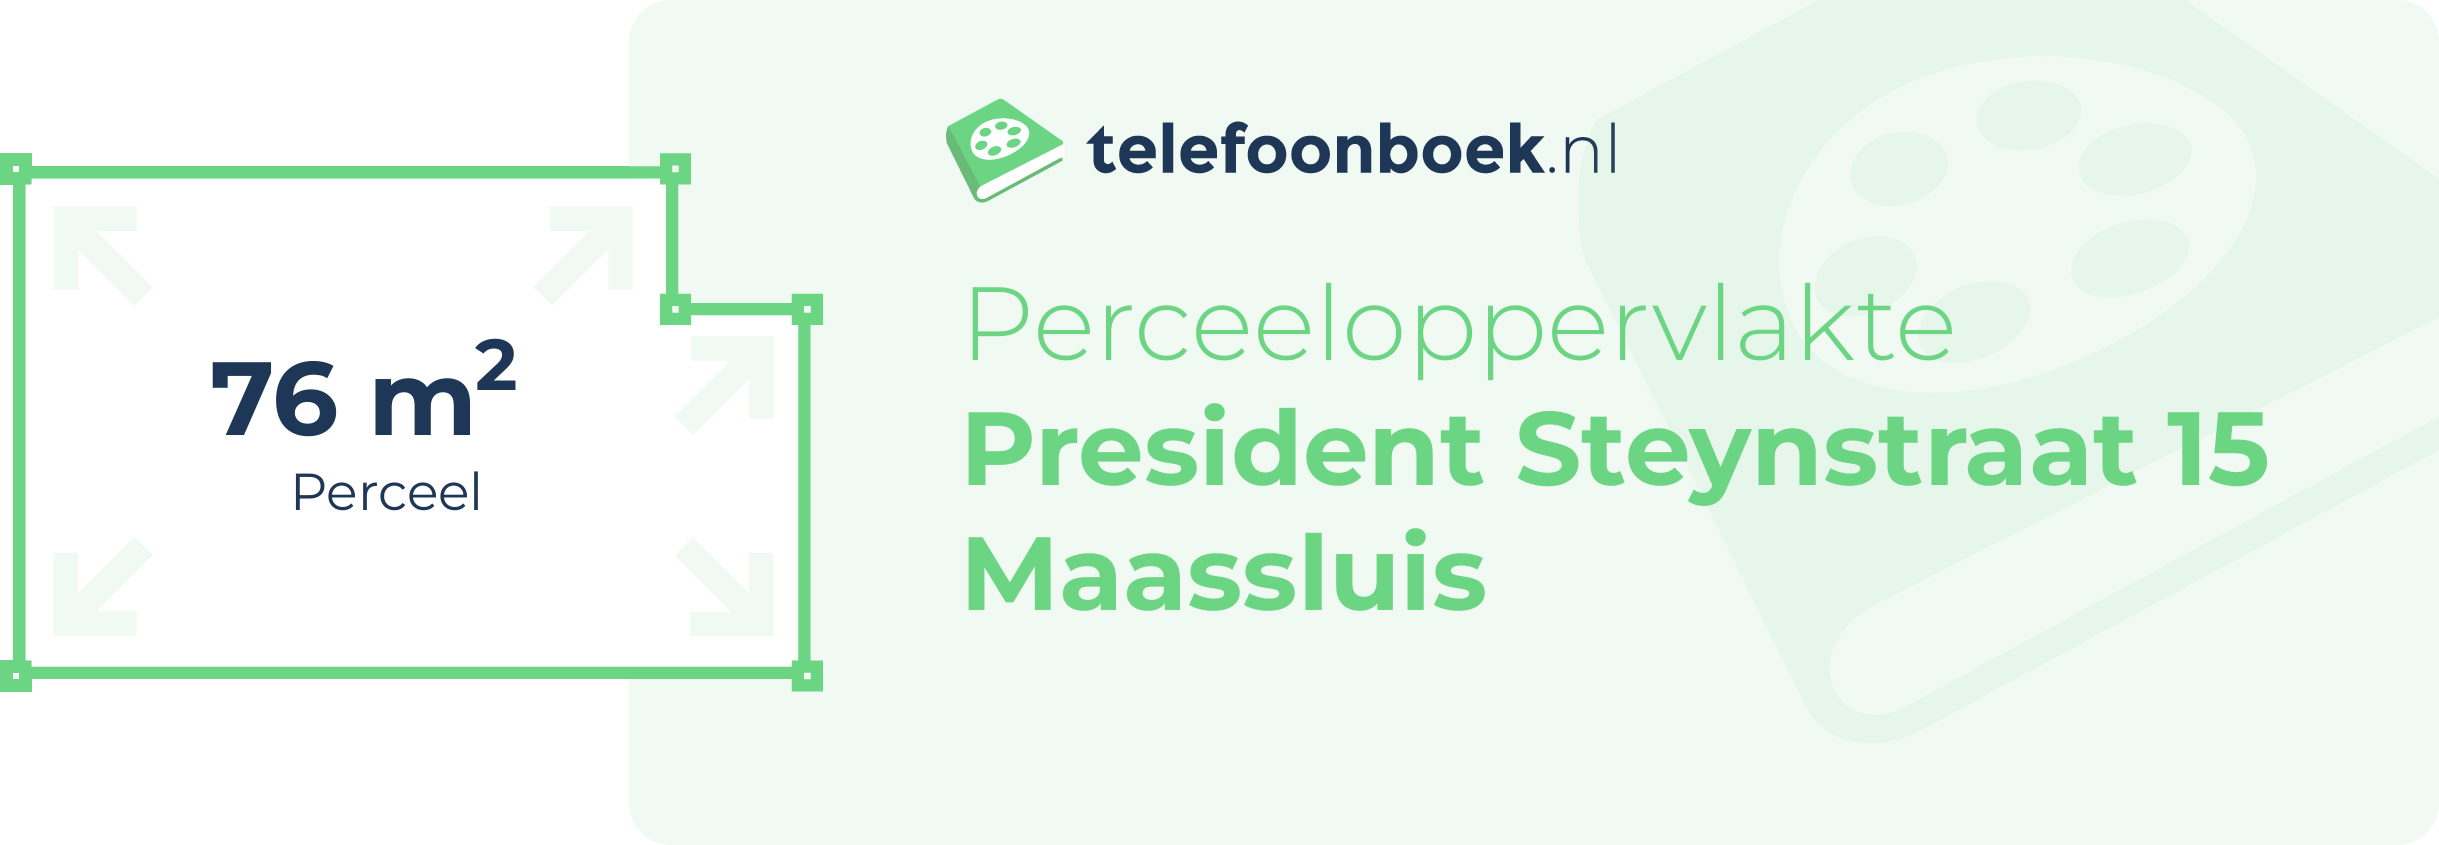 Perceeloppervlakte President Steynstraat 15 Maassluis